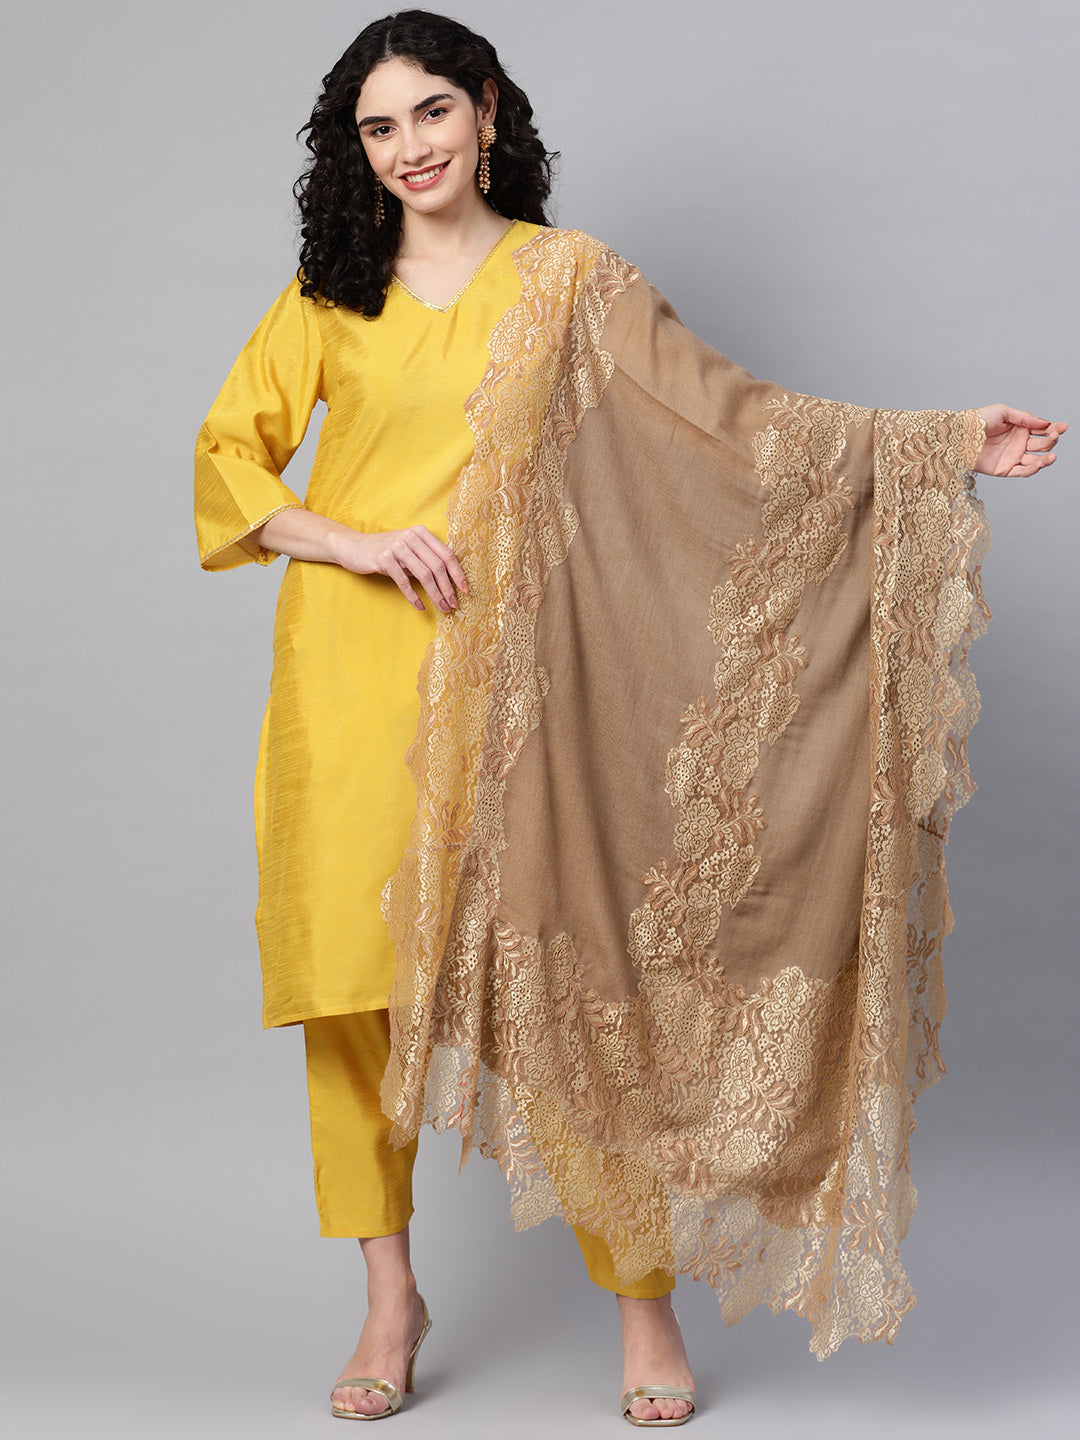 golden shawl, bridal shawl online, lace shawl